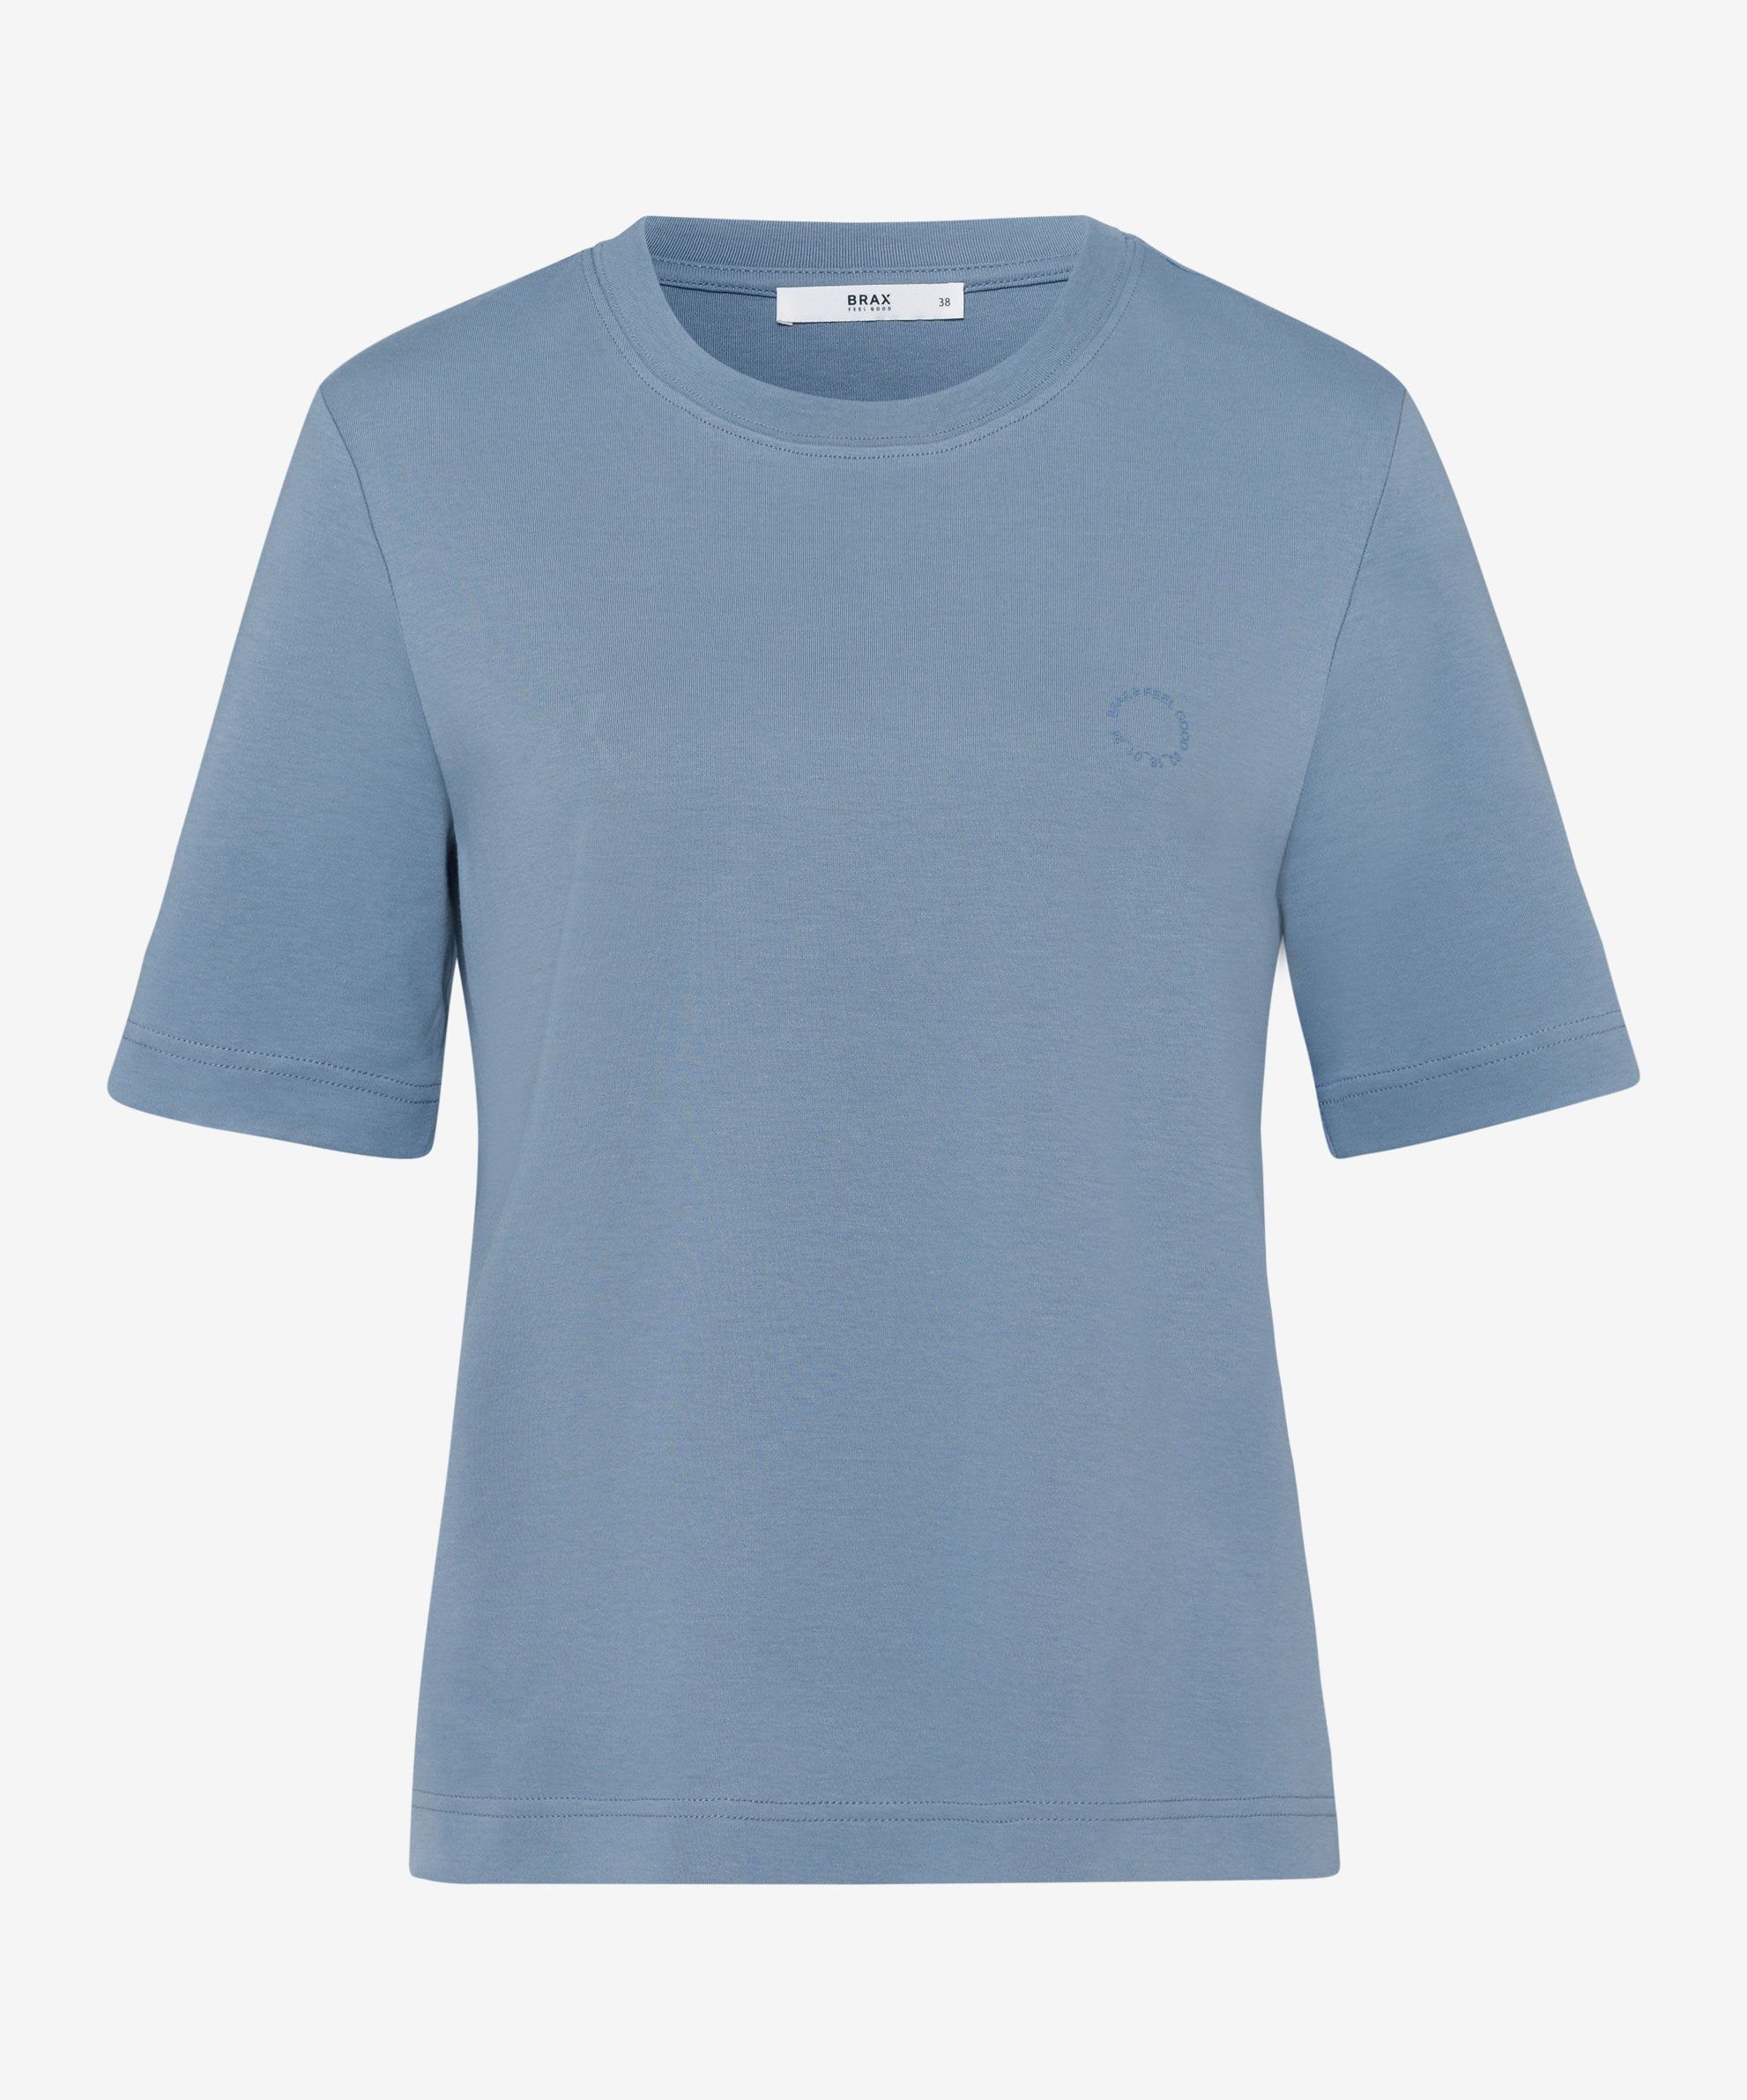 Brax Shirts online kaufen | OTTO